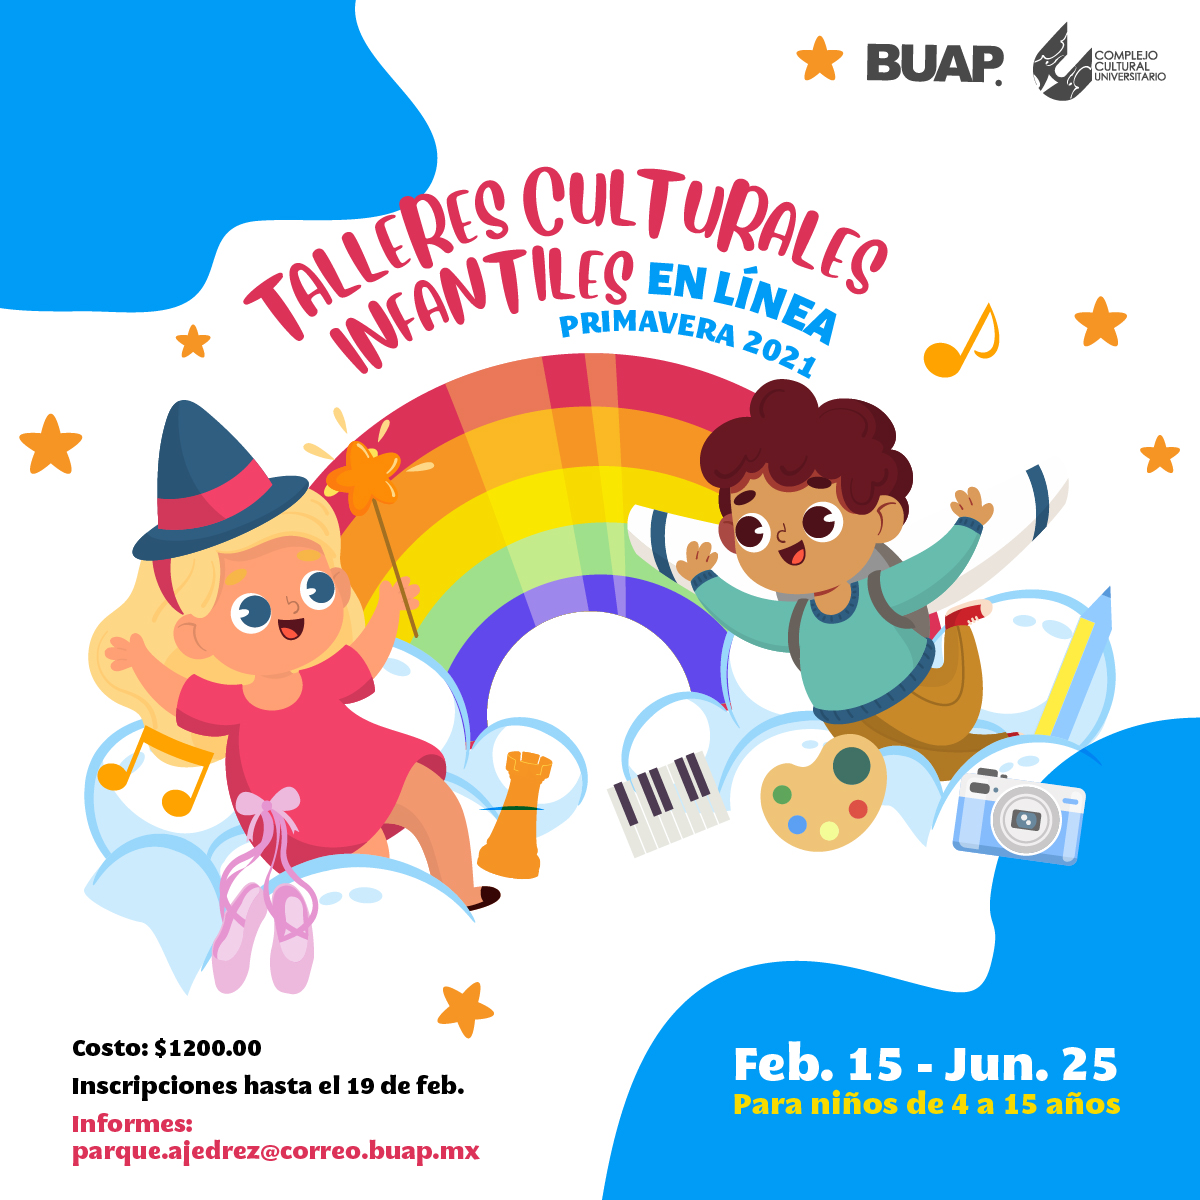 CCU BUAP abre talleres culturales y artísticos en línea para niños 